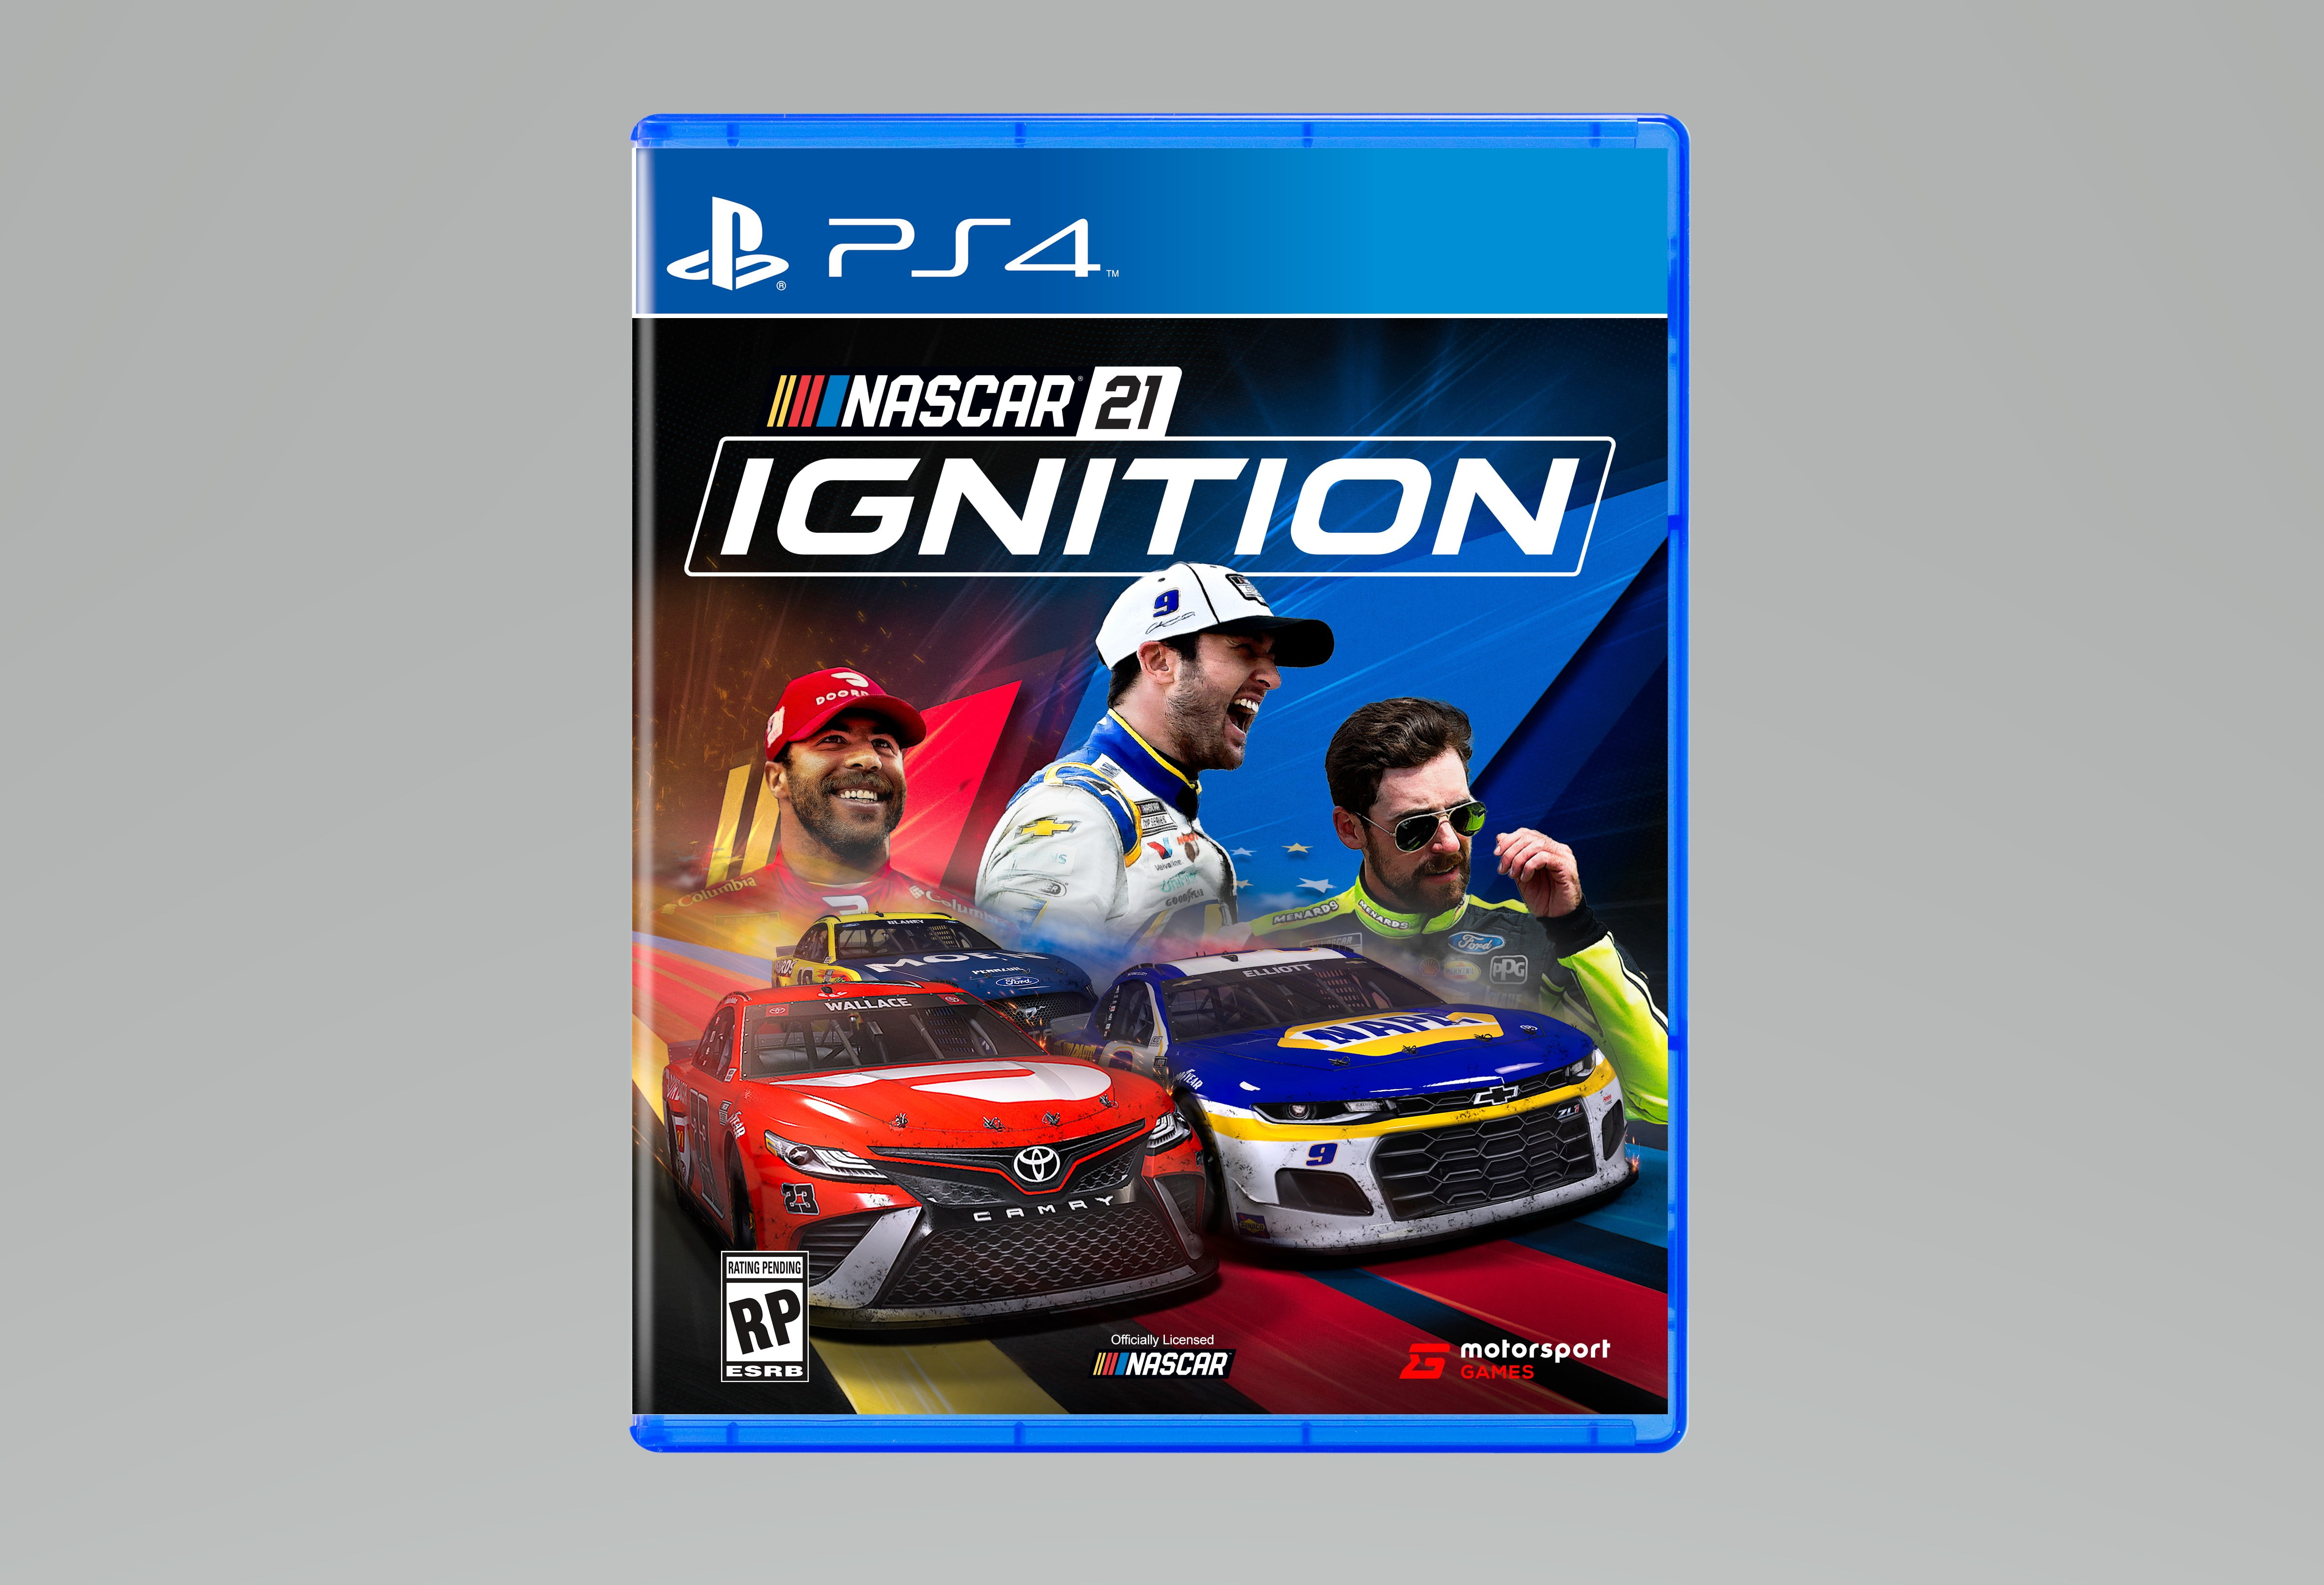 NASCAR 21 Ignition, Motorsport Games, PlayStation 4